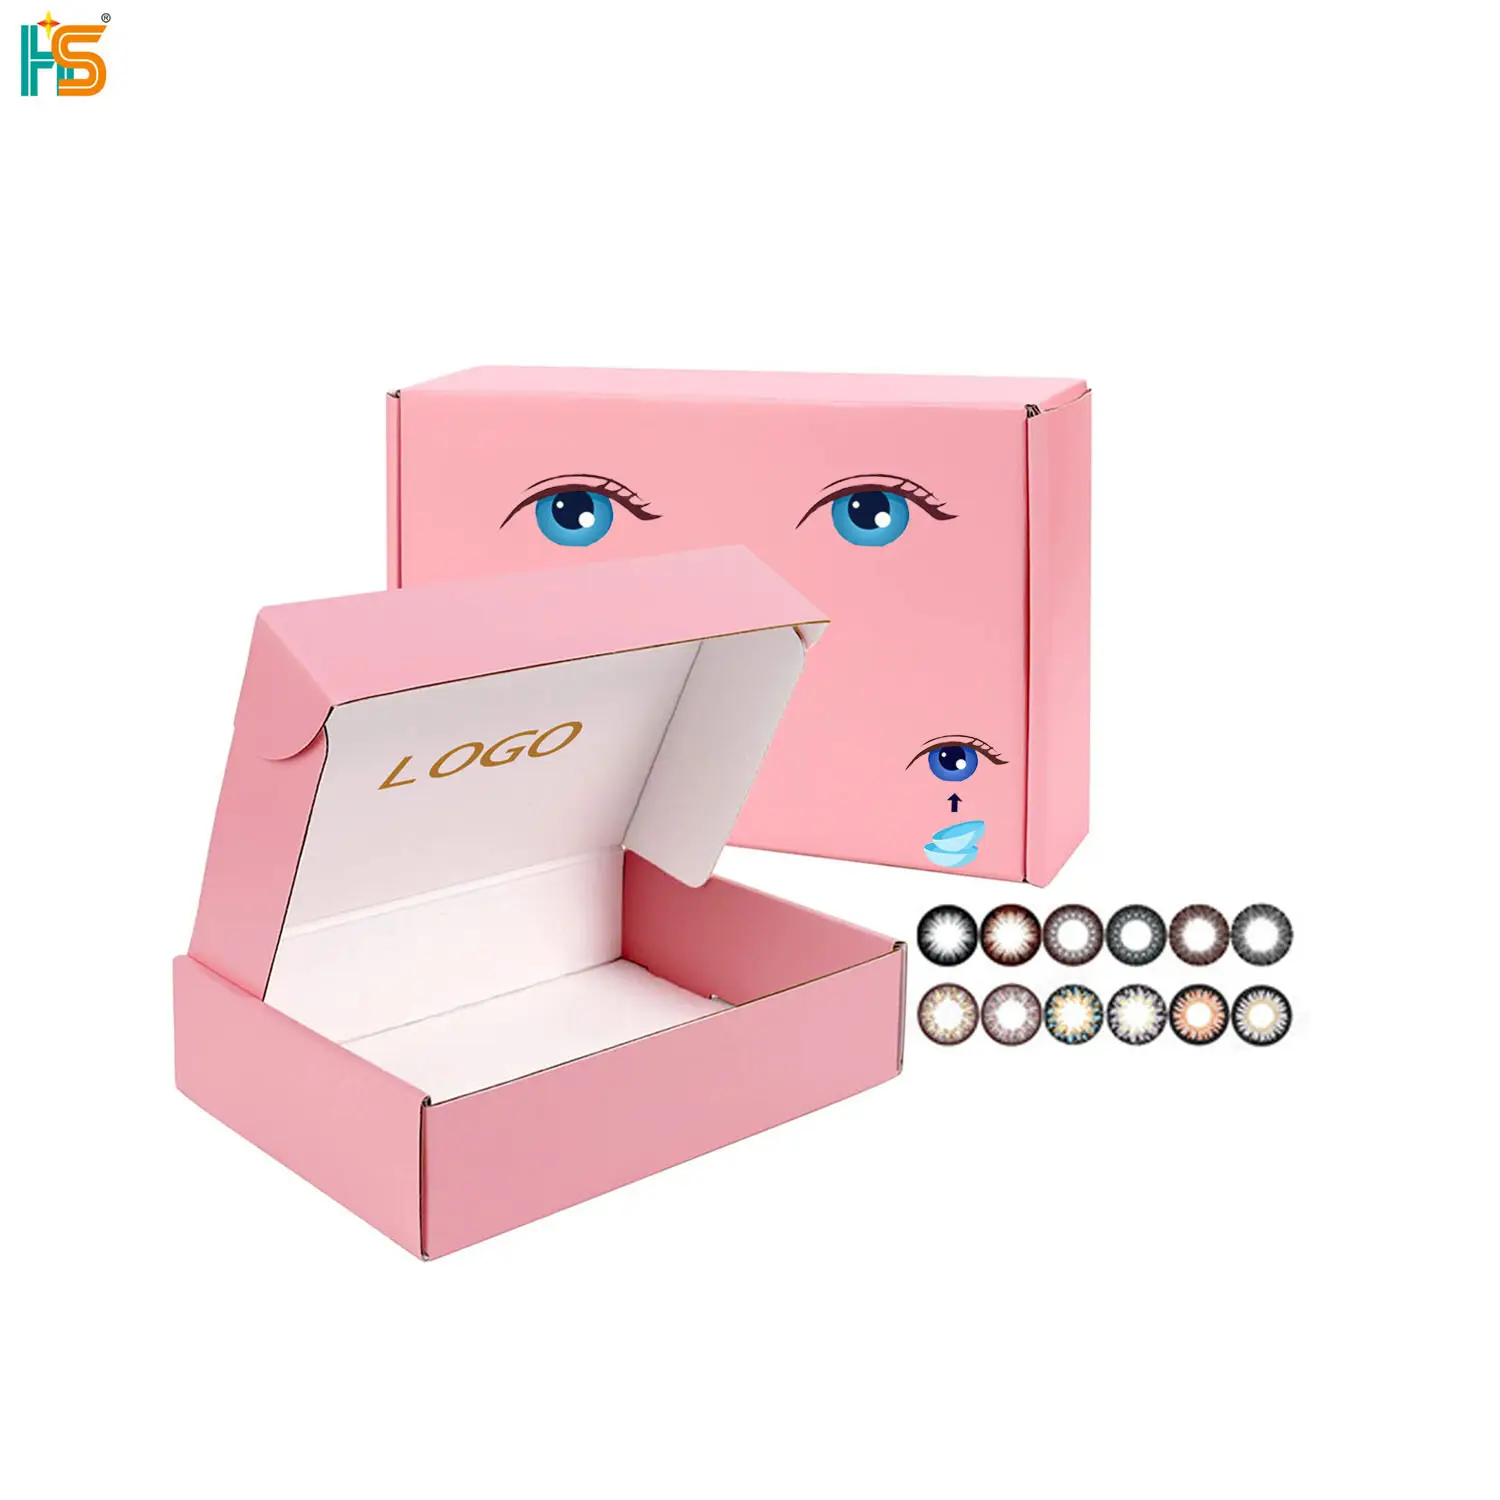 Caixas de papel cor-de-rosa para embalagem de lentes de contato, material reciclado, caixa de papel ondulado para impressão de logotipo